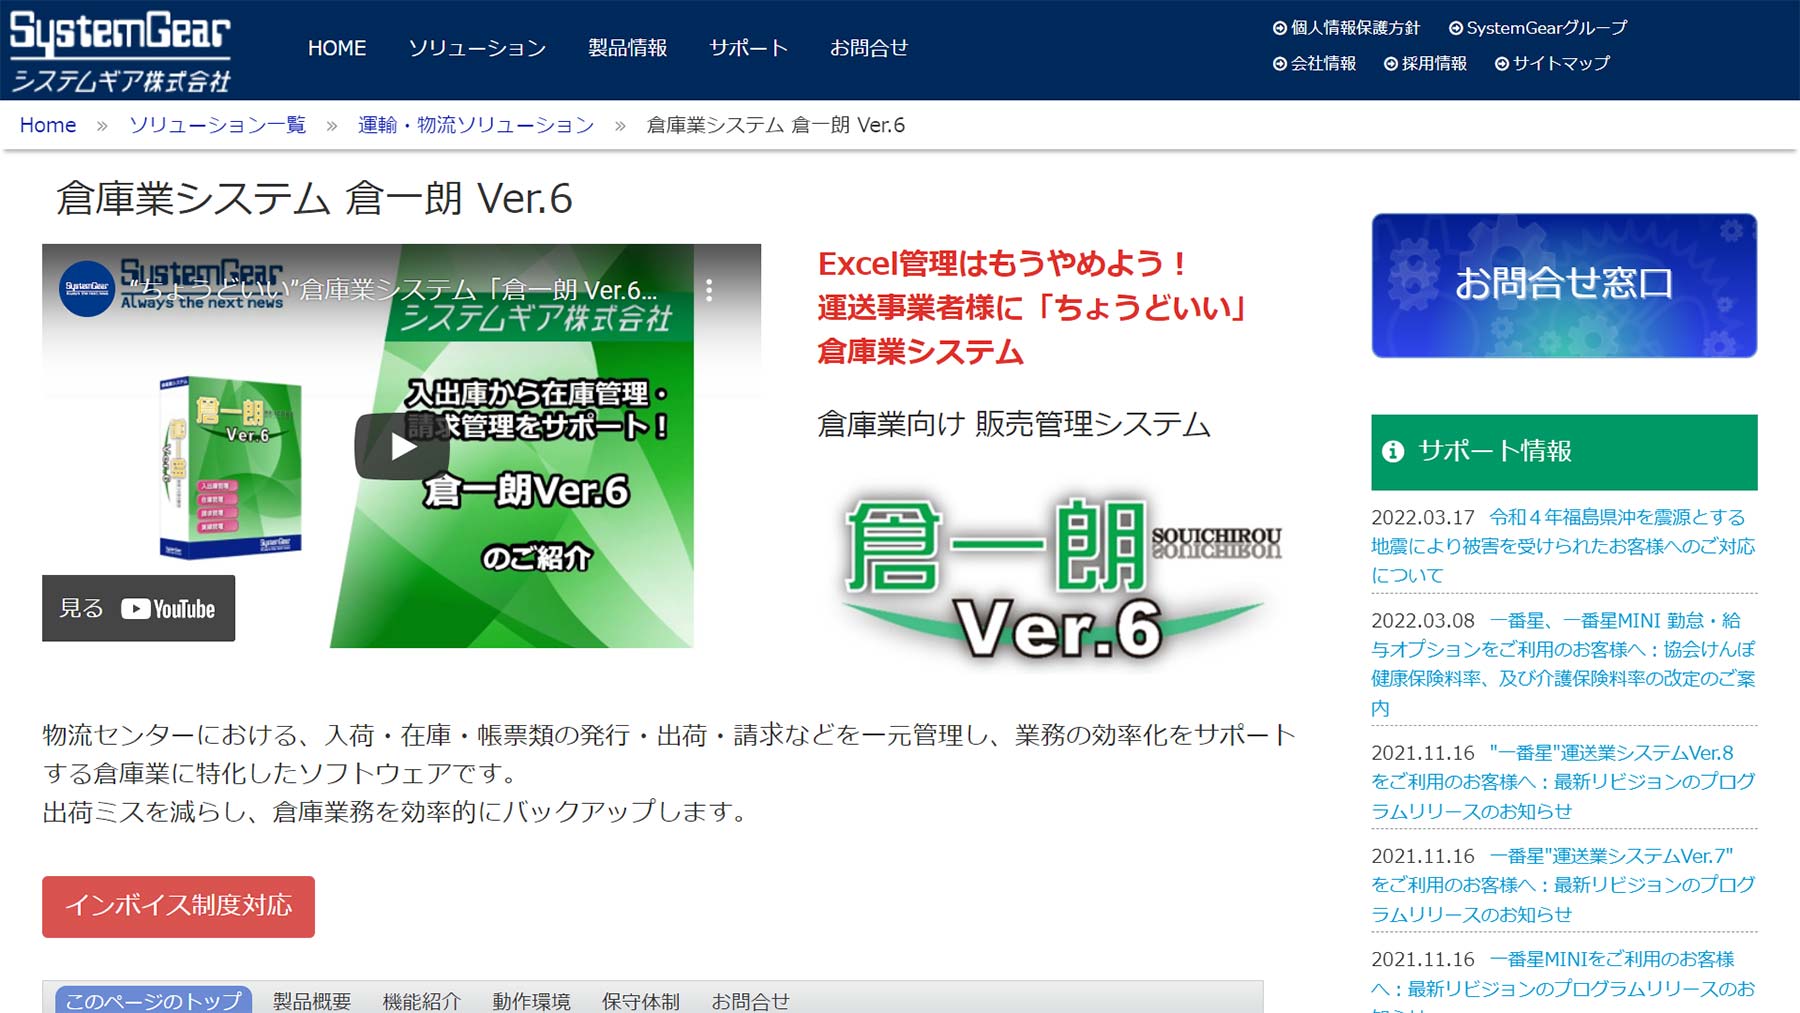 倉一朗 Ver.6公式Webサイト